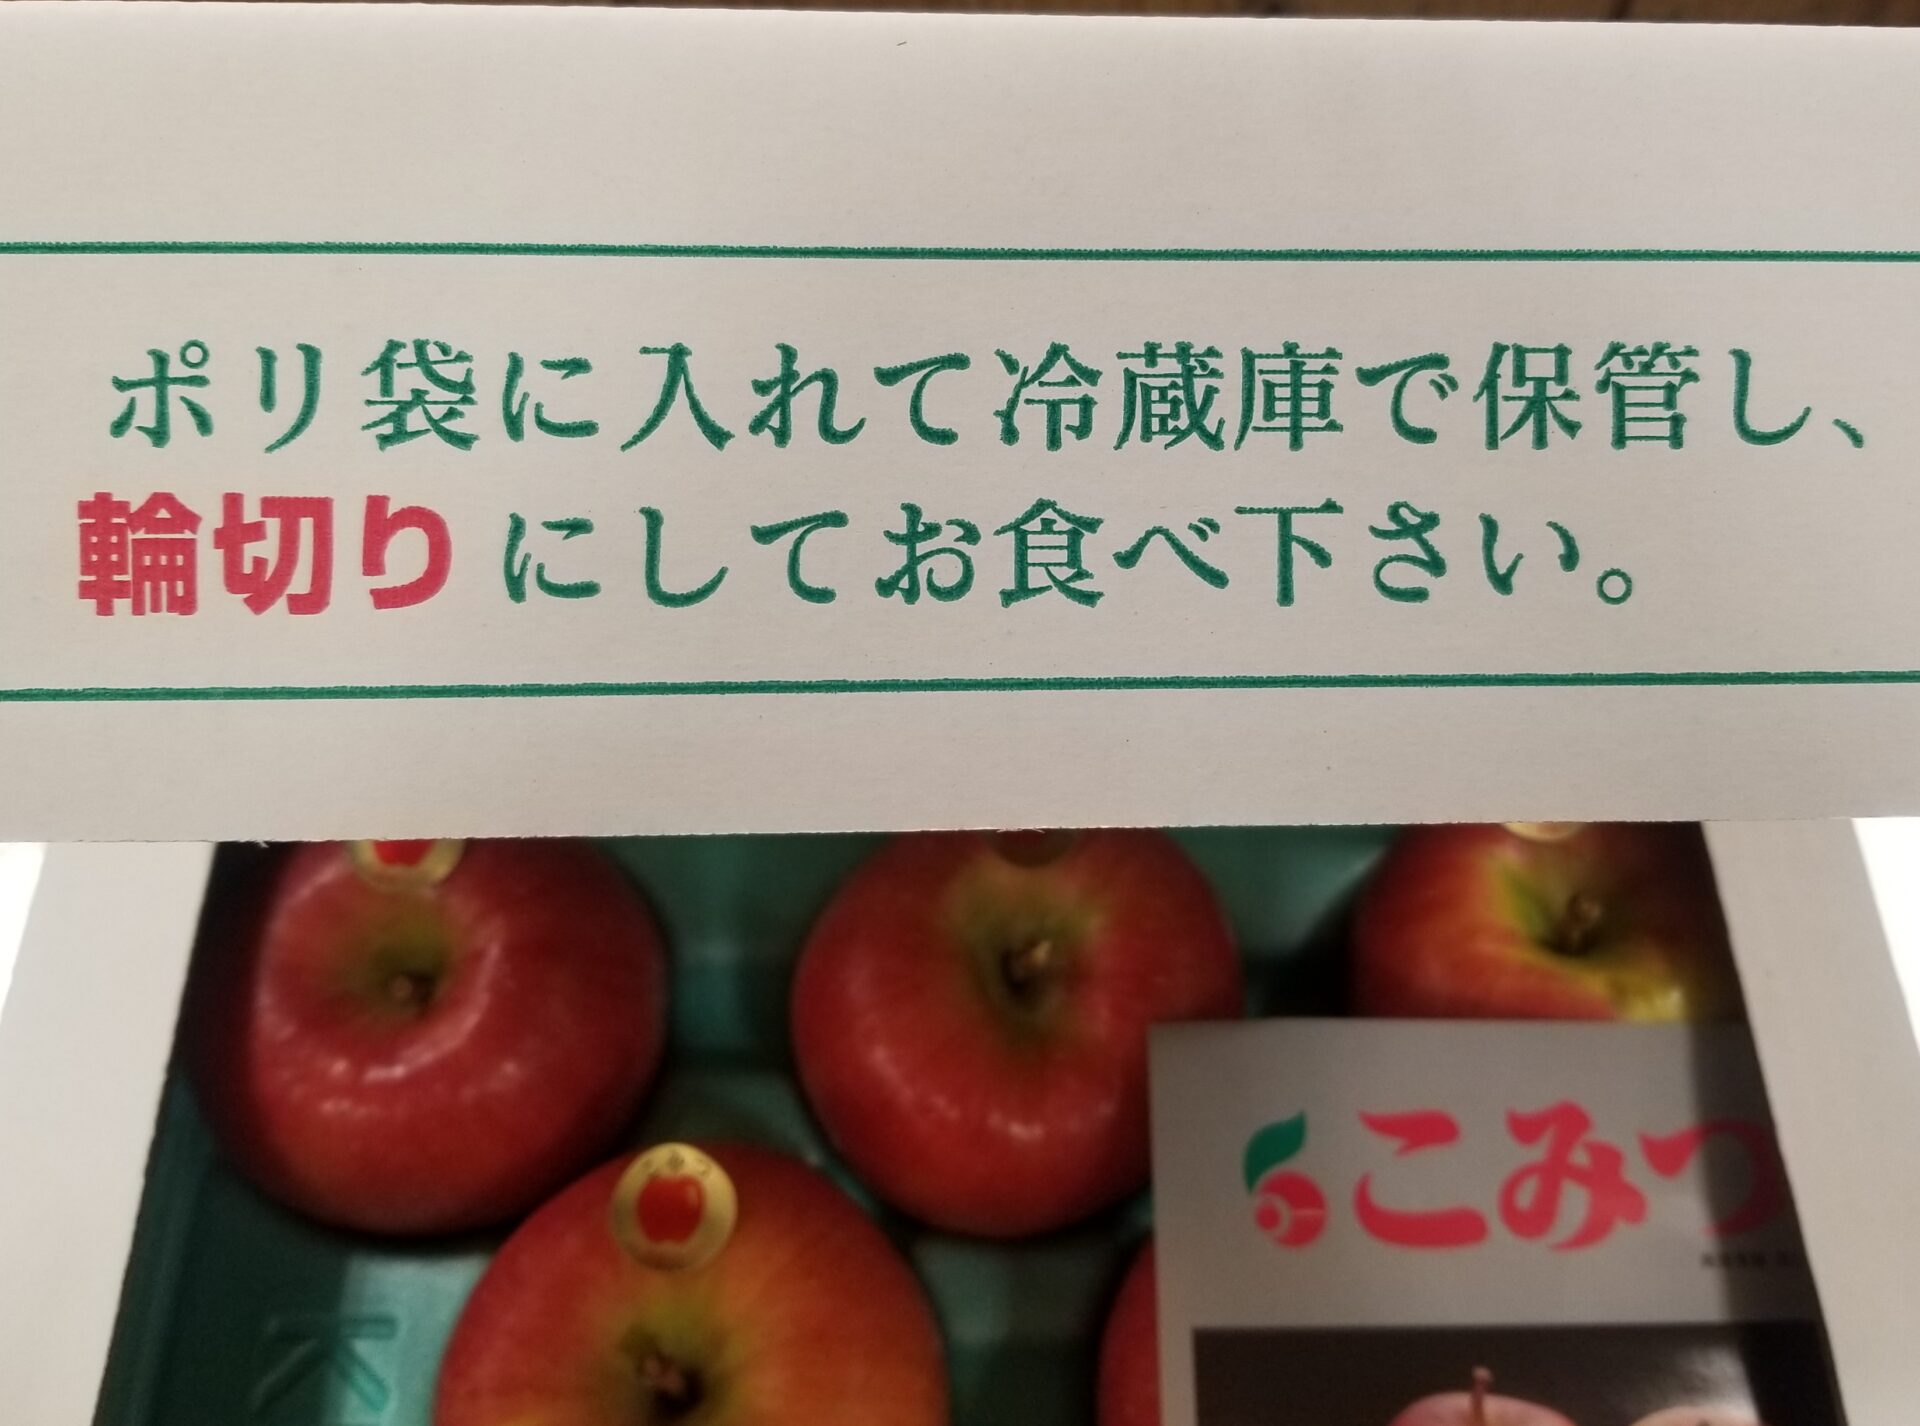 蜜入りりんごの「保存方法や食べ方」